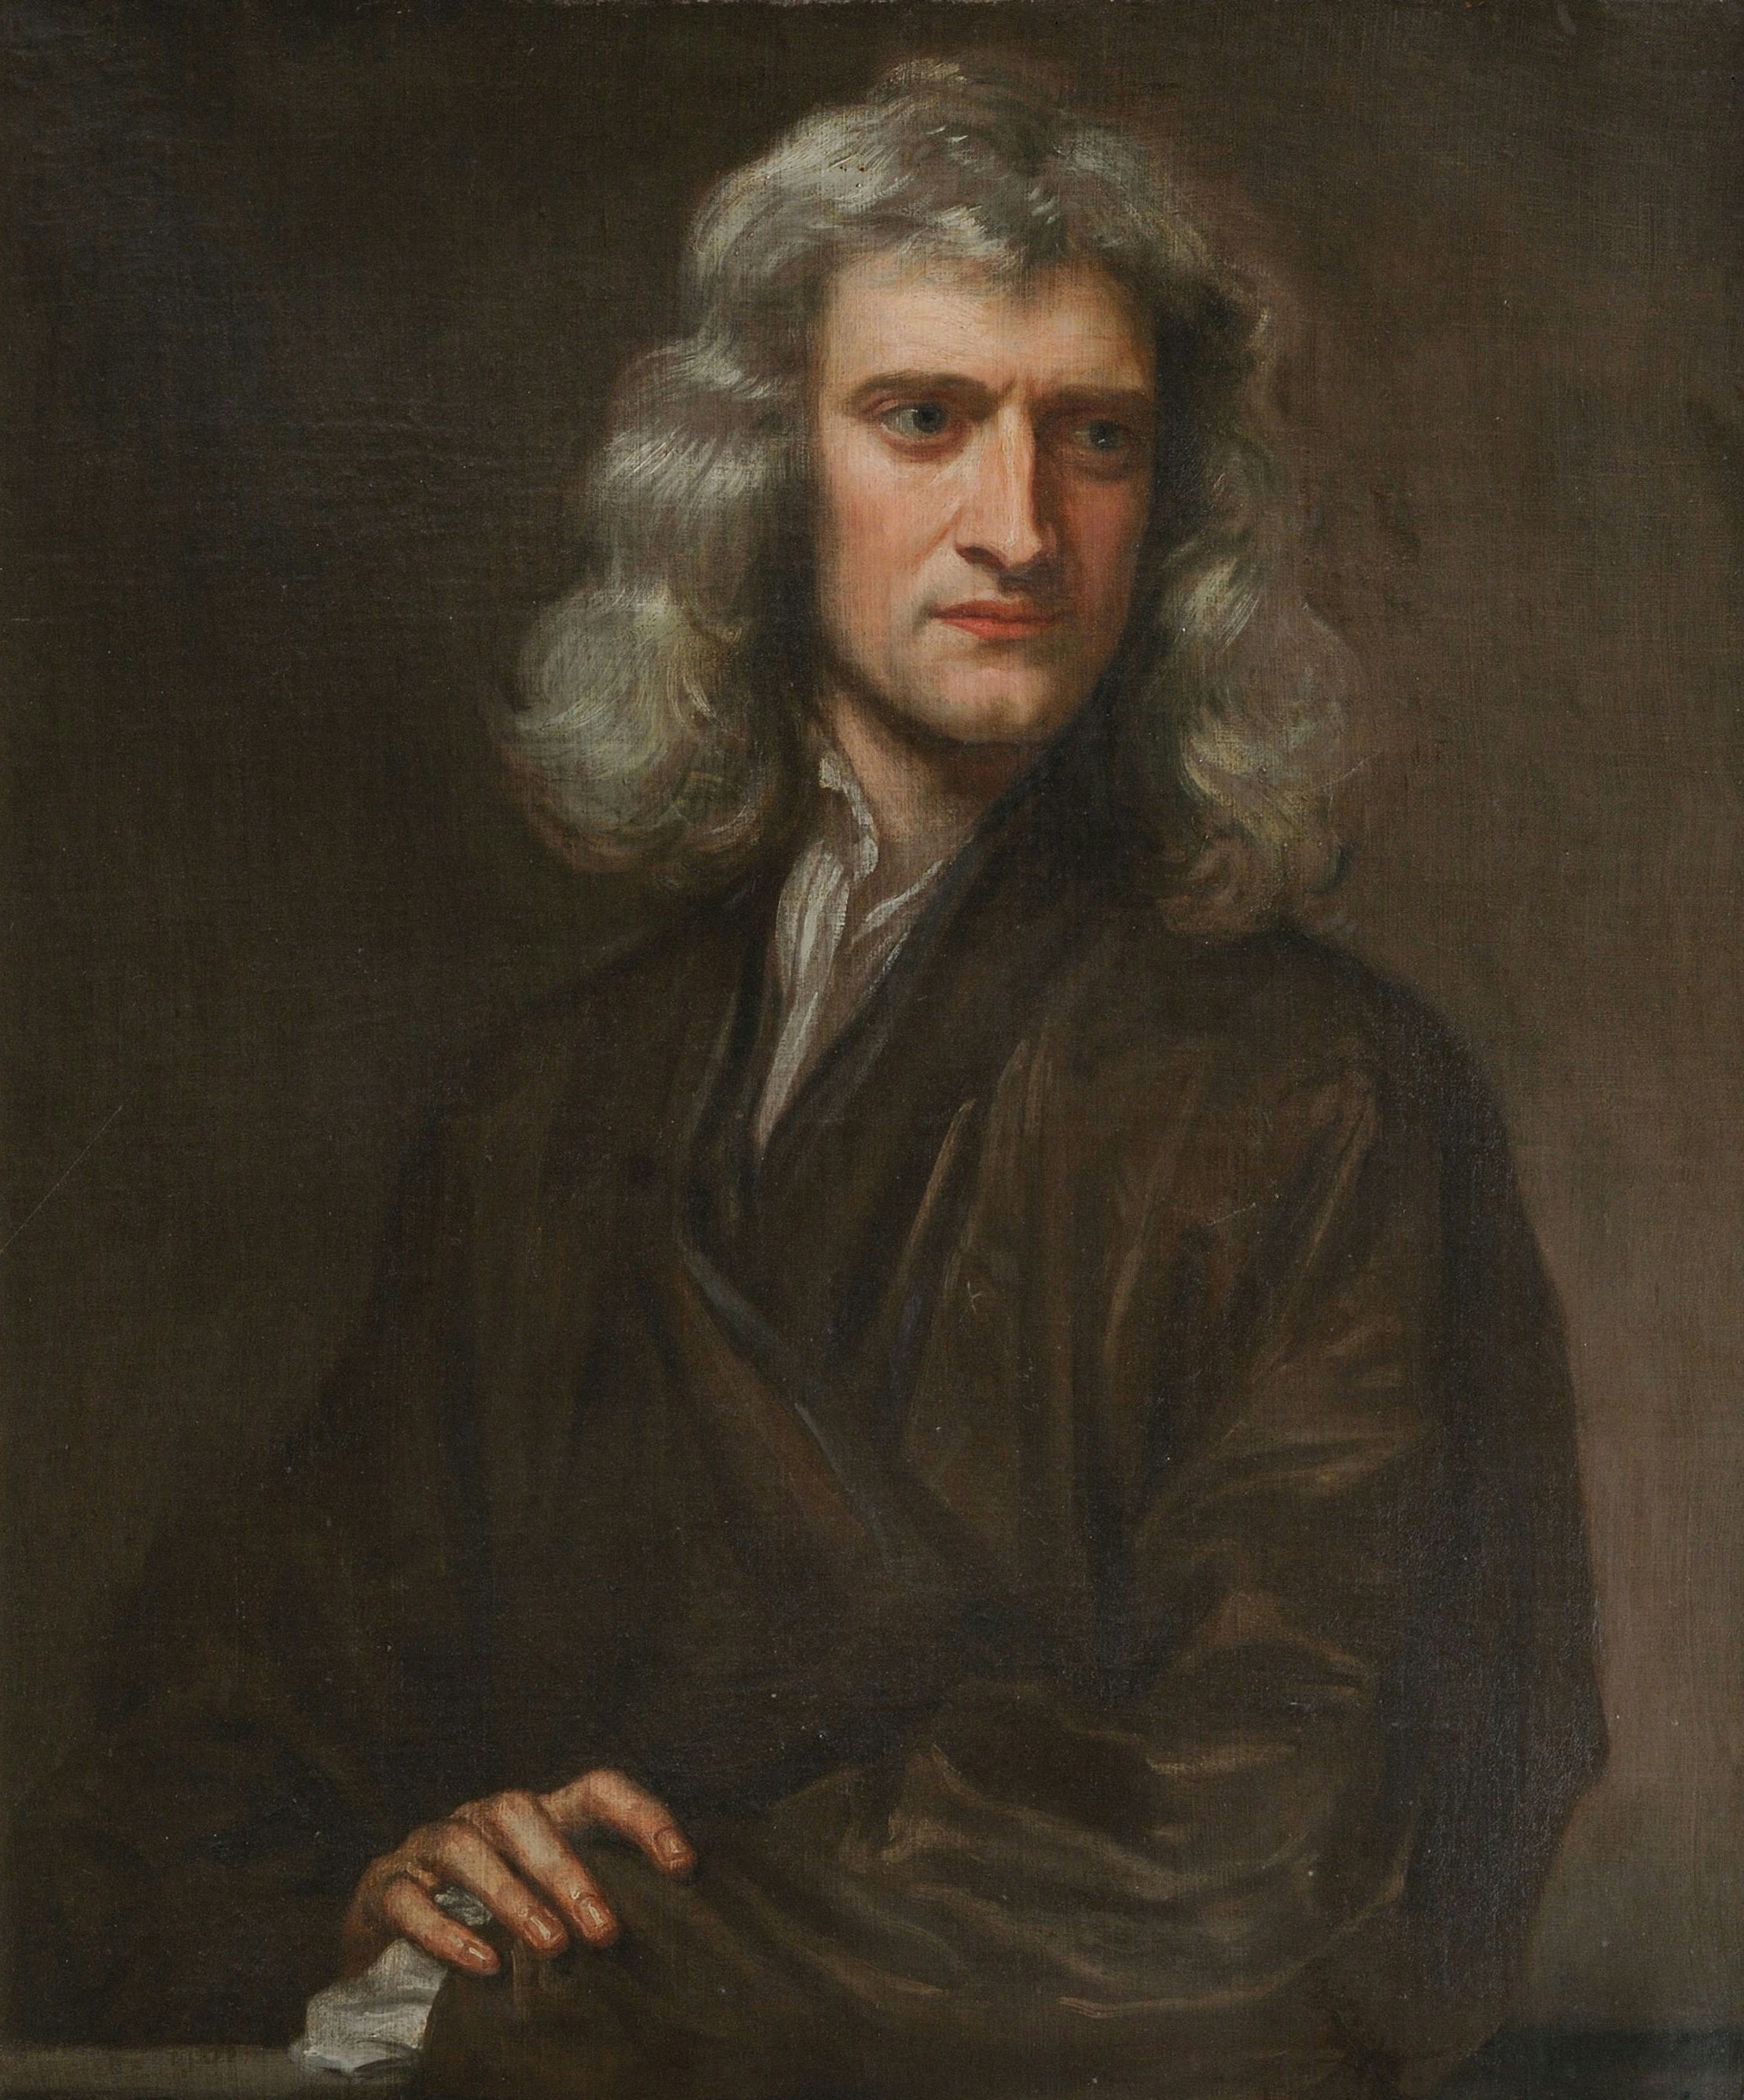 Sir Isacco Newton